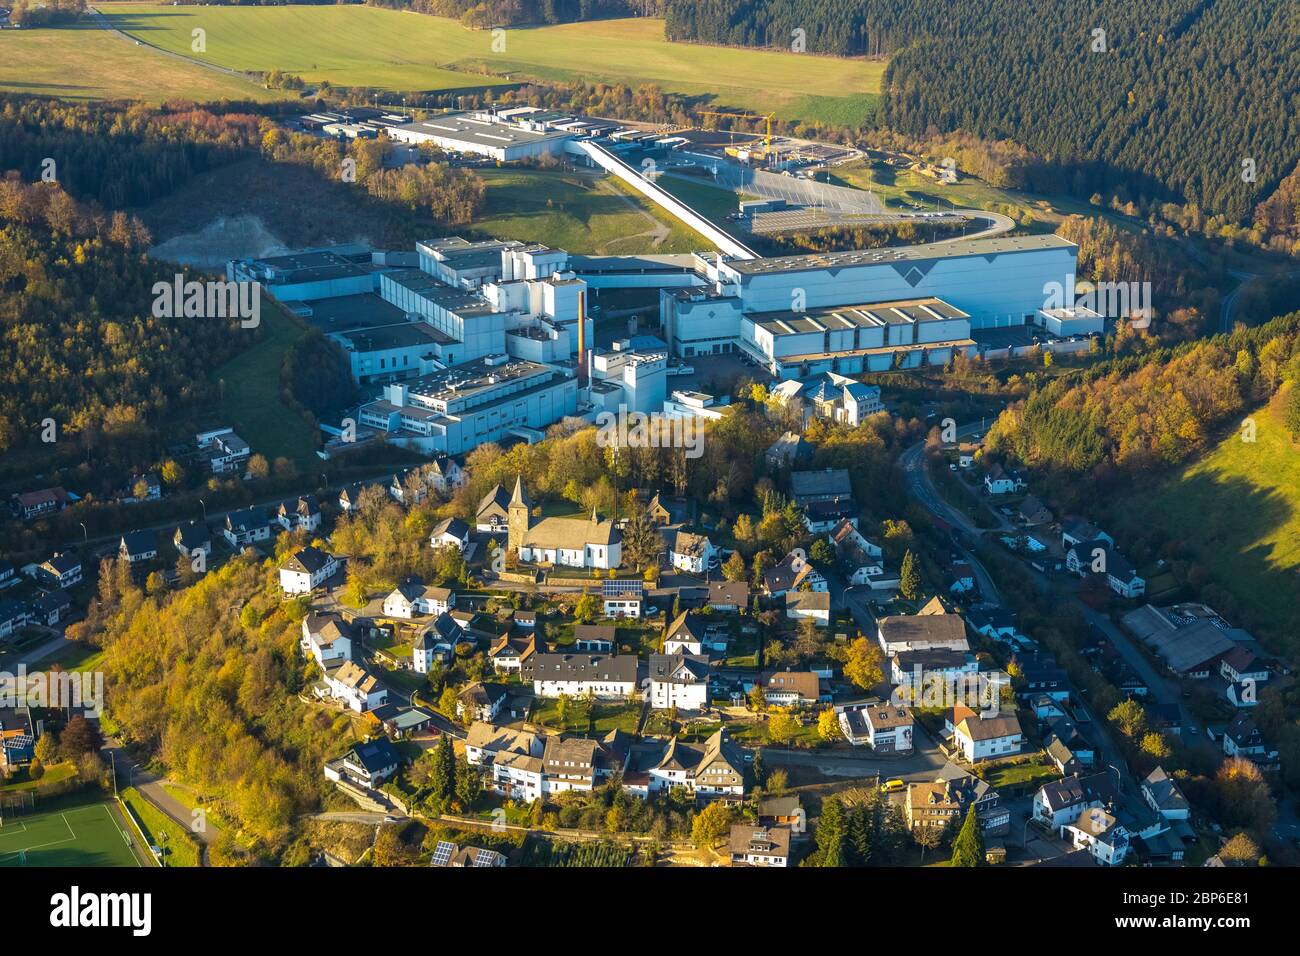 Aerial view, brewery C. & A. VELTINS GmbH & Co. KG, town view Grevenstein with church St. Antonius Einsiedler, Grevenstein, Meschede, Sauerland, North Rhine-Westphalia, Germany Stock Photo